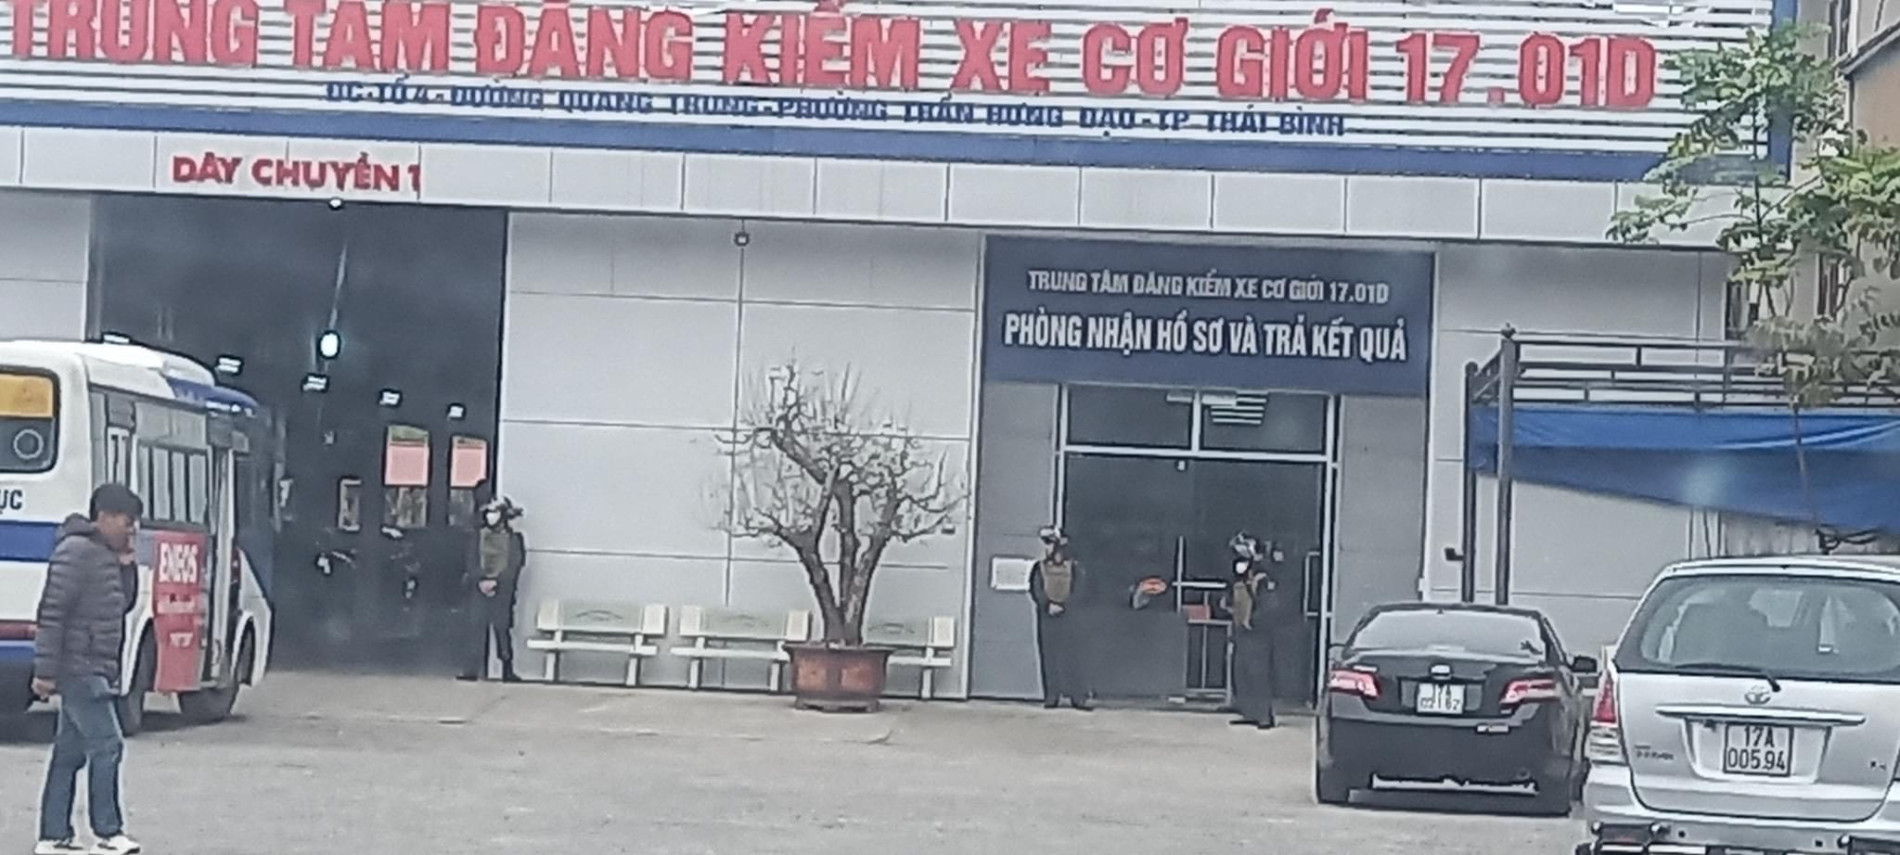 Khởi tố 8 người nhận hối lộ tại 2 Trung tâm đăng kiểm xe cơ giới ở Thái Bình